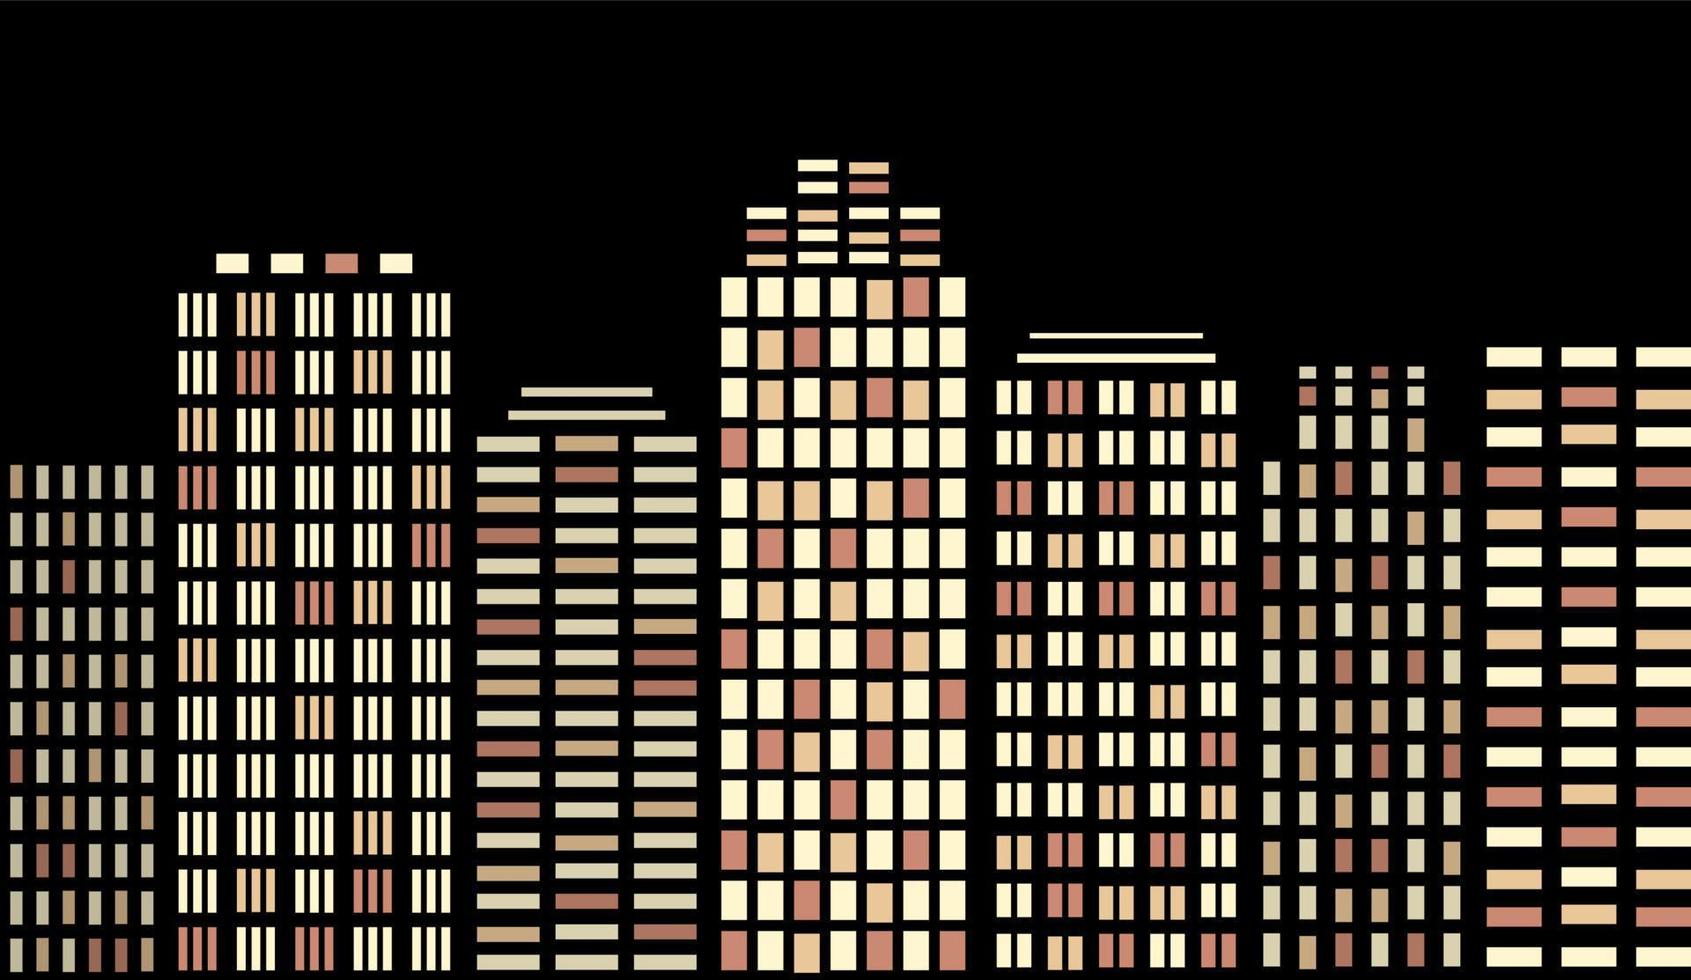 nachtstad, gloeiende hoogtepunten. nacht stad illustratie in cartoon-stijl op lichte achtergrond. vector illustratie ontwerp.